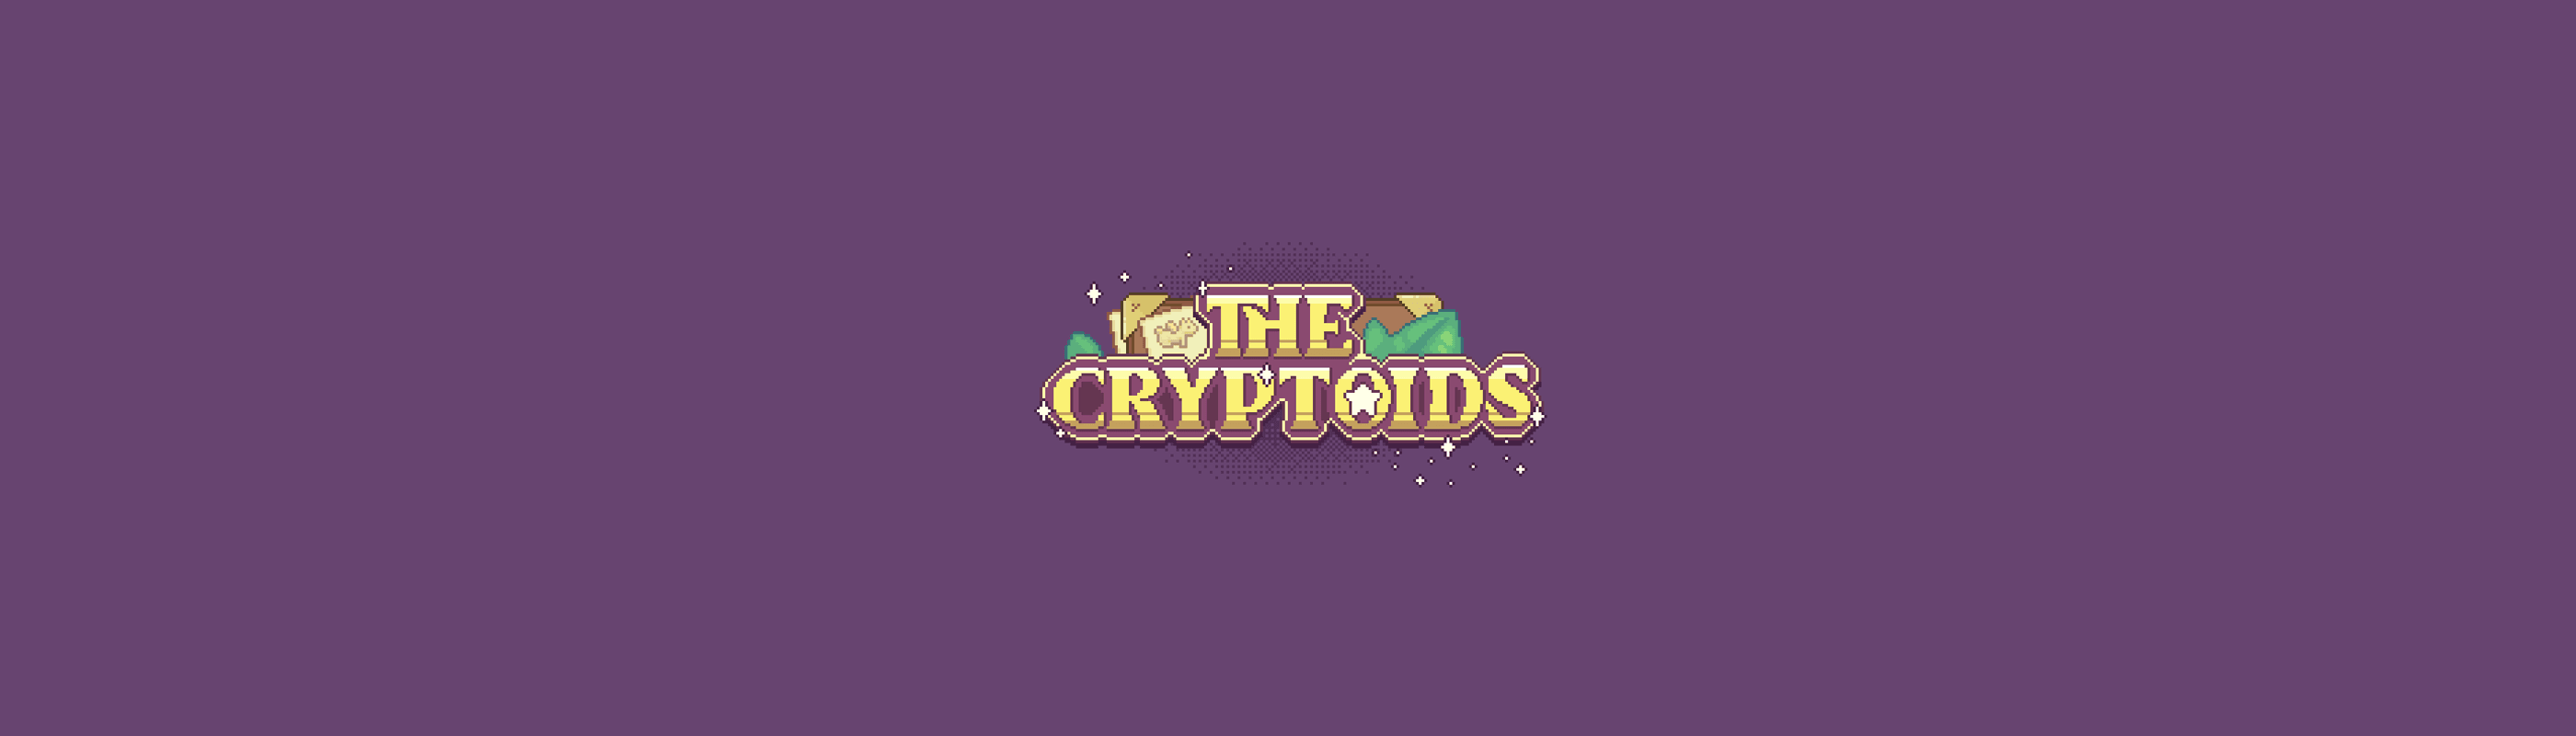 The Cryptoids